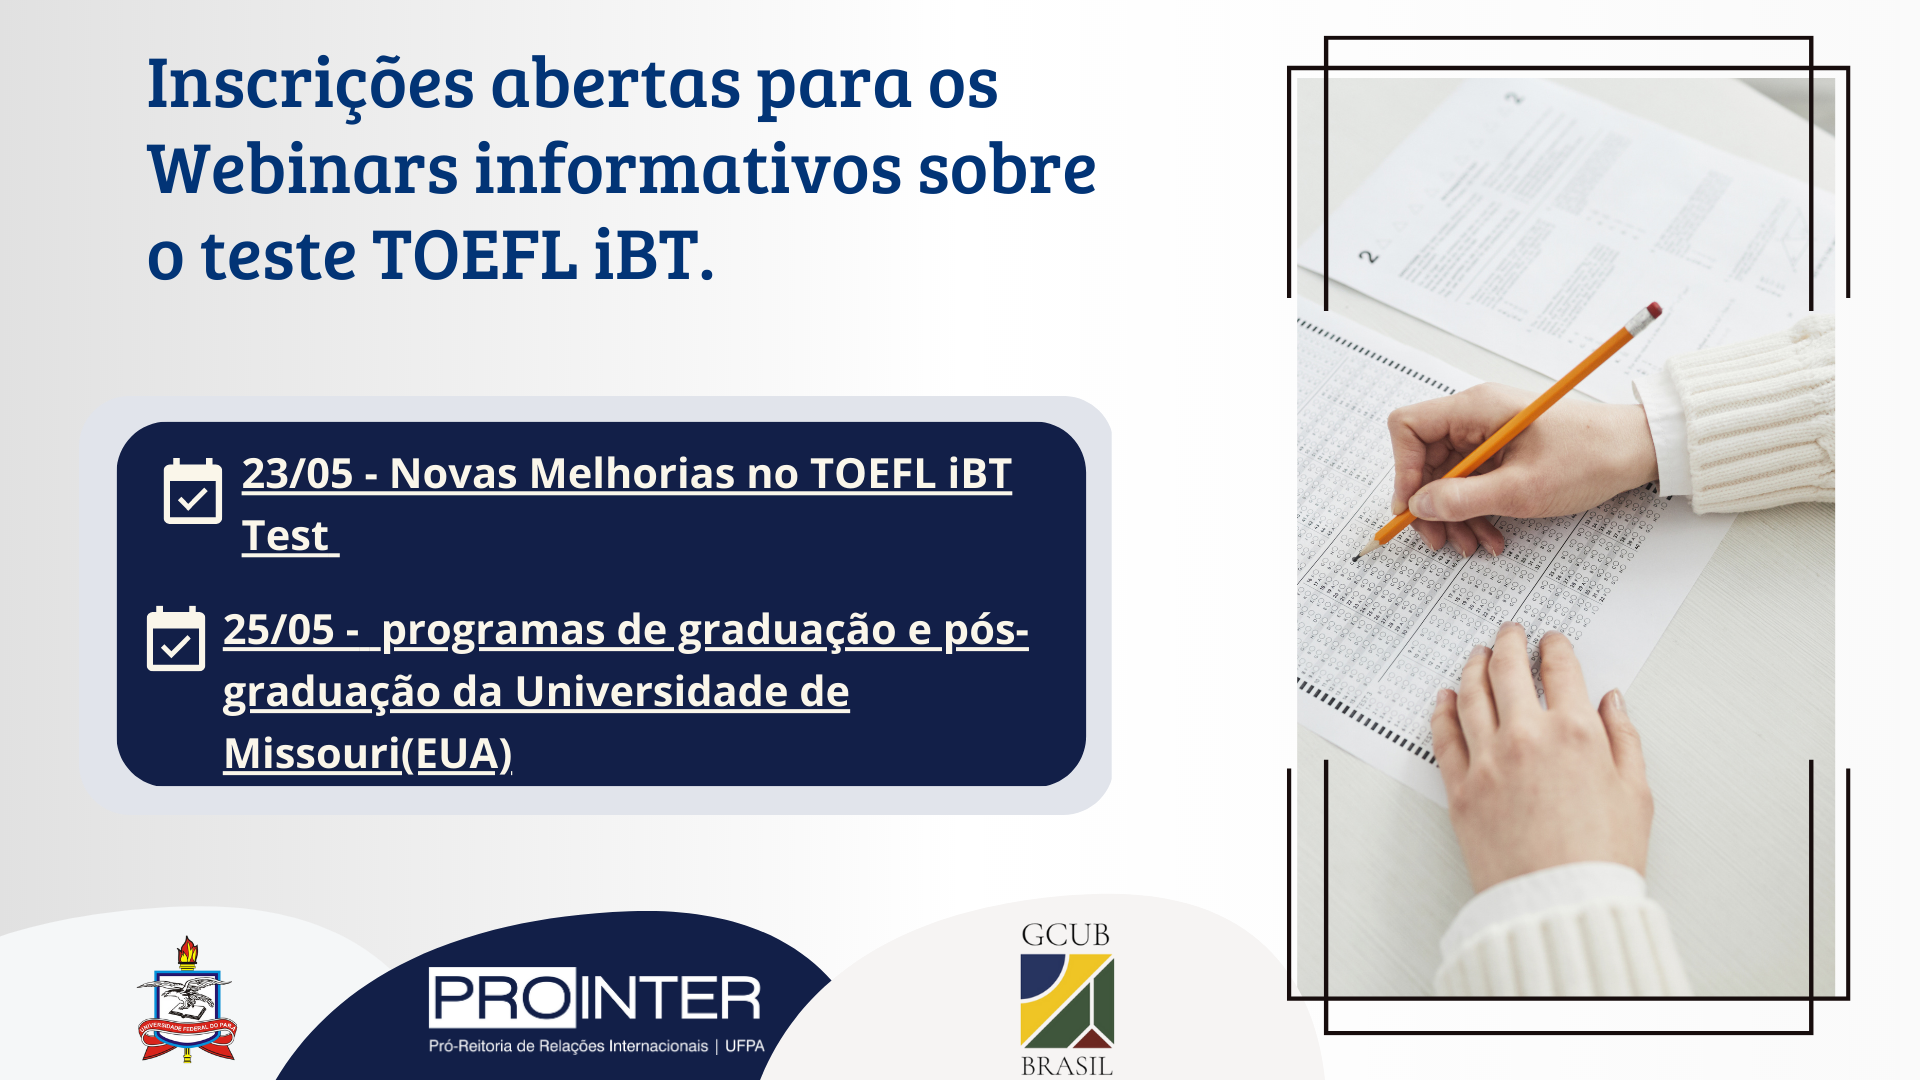 Inscrições abertas para webinários sobre o teste TOEFL iBT